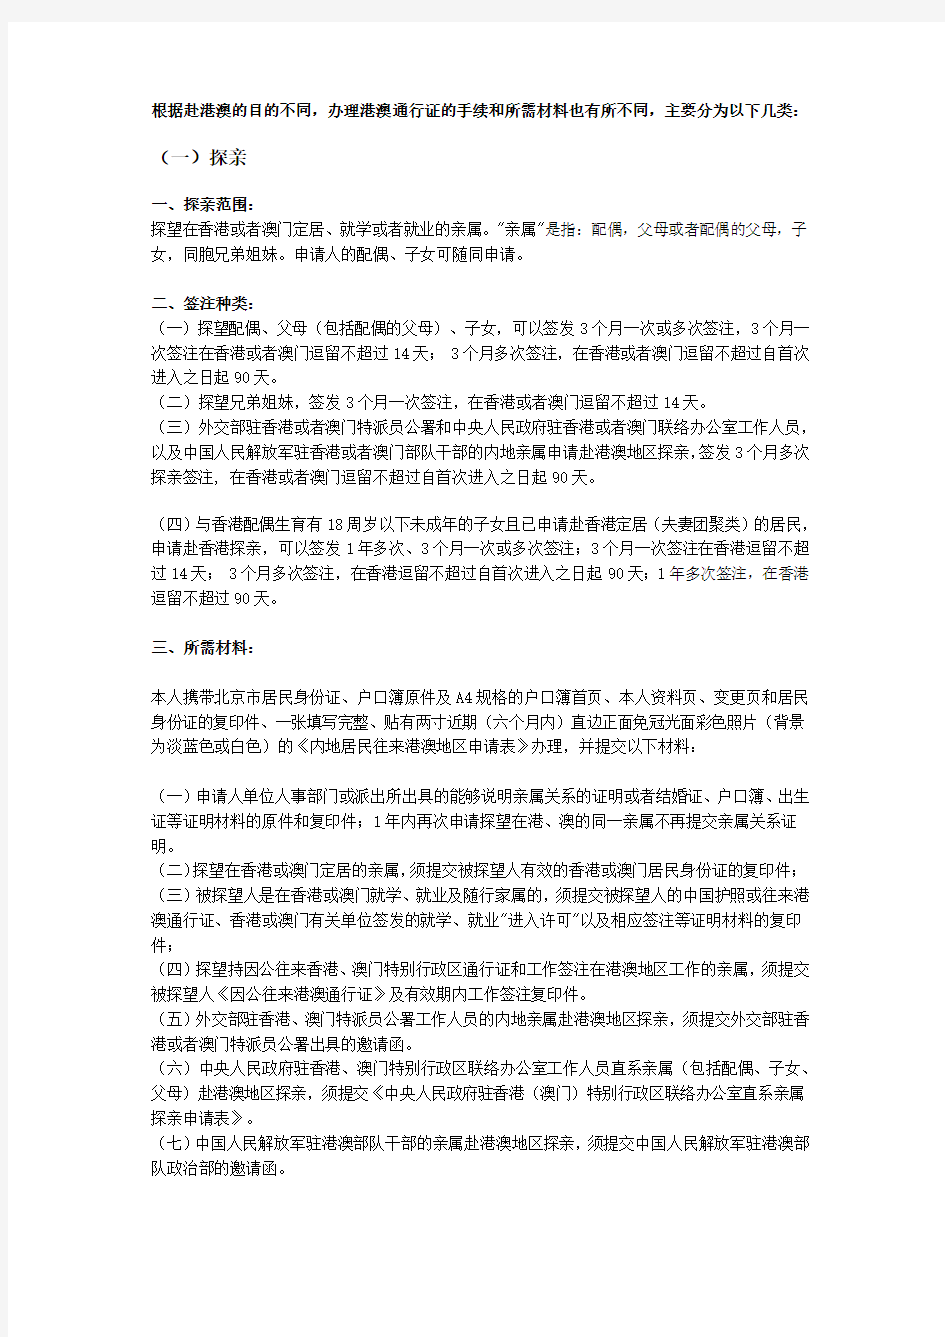 北京居民首次办理港澳通行证手续及所需材料